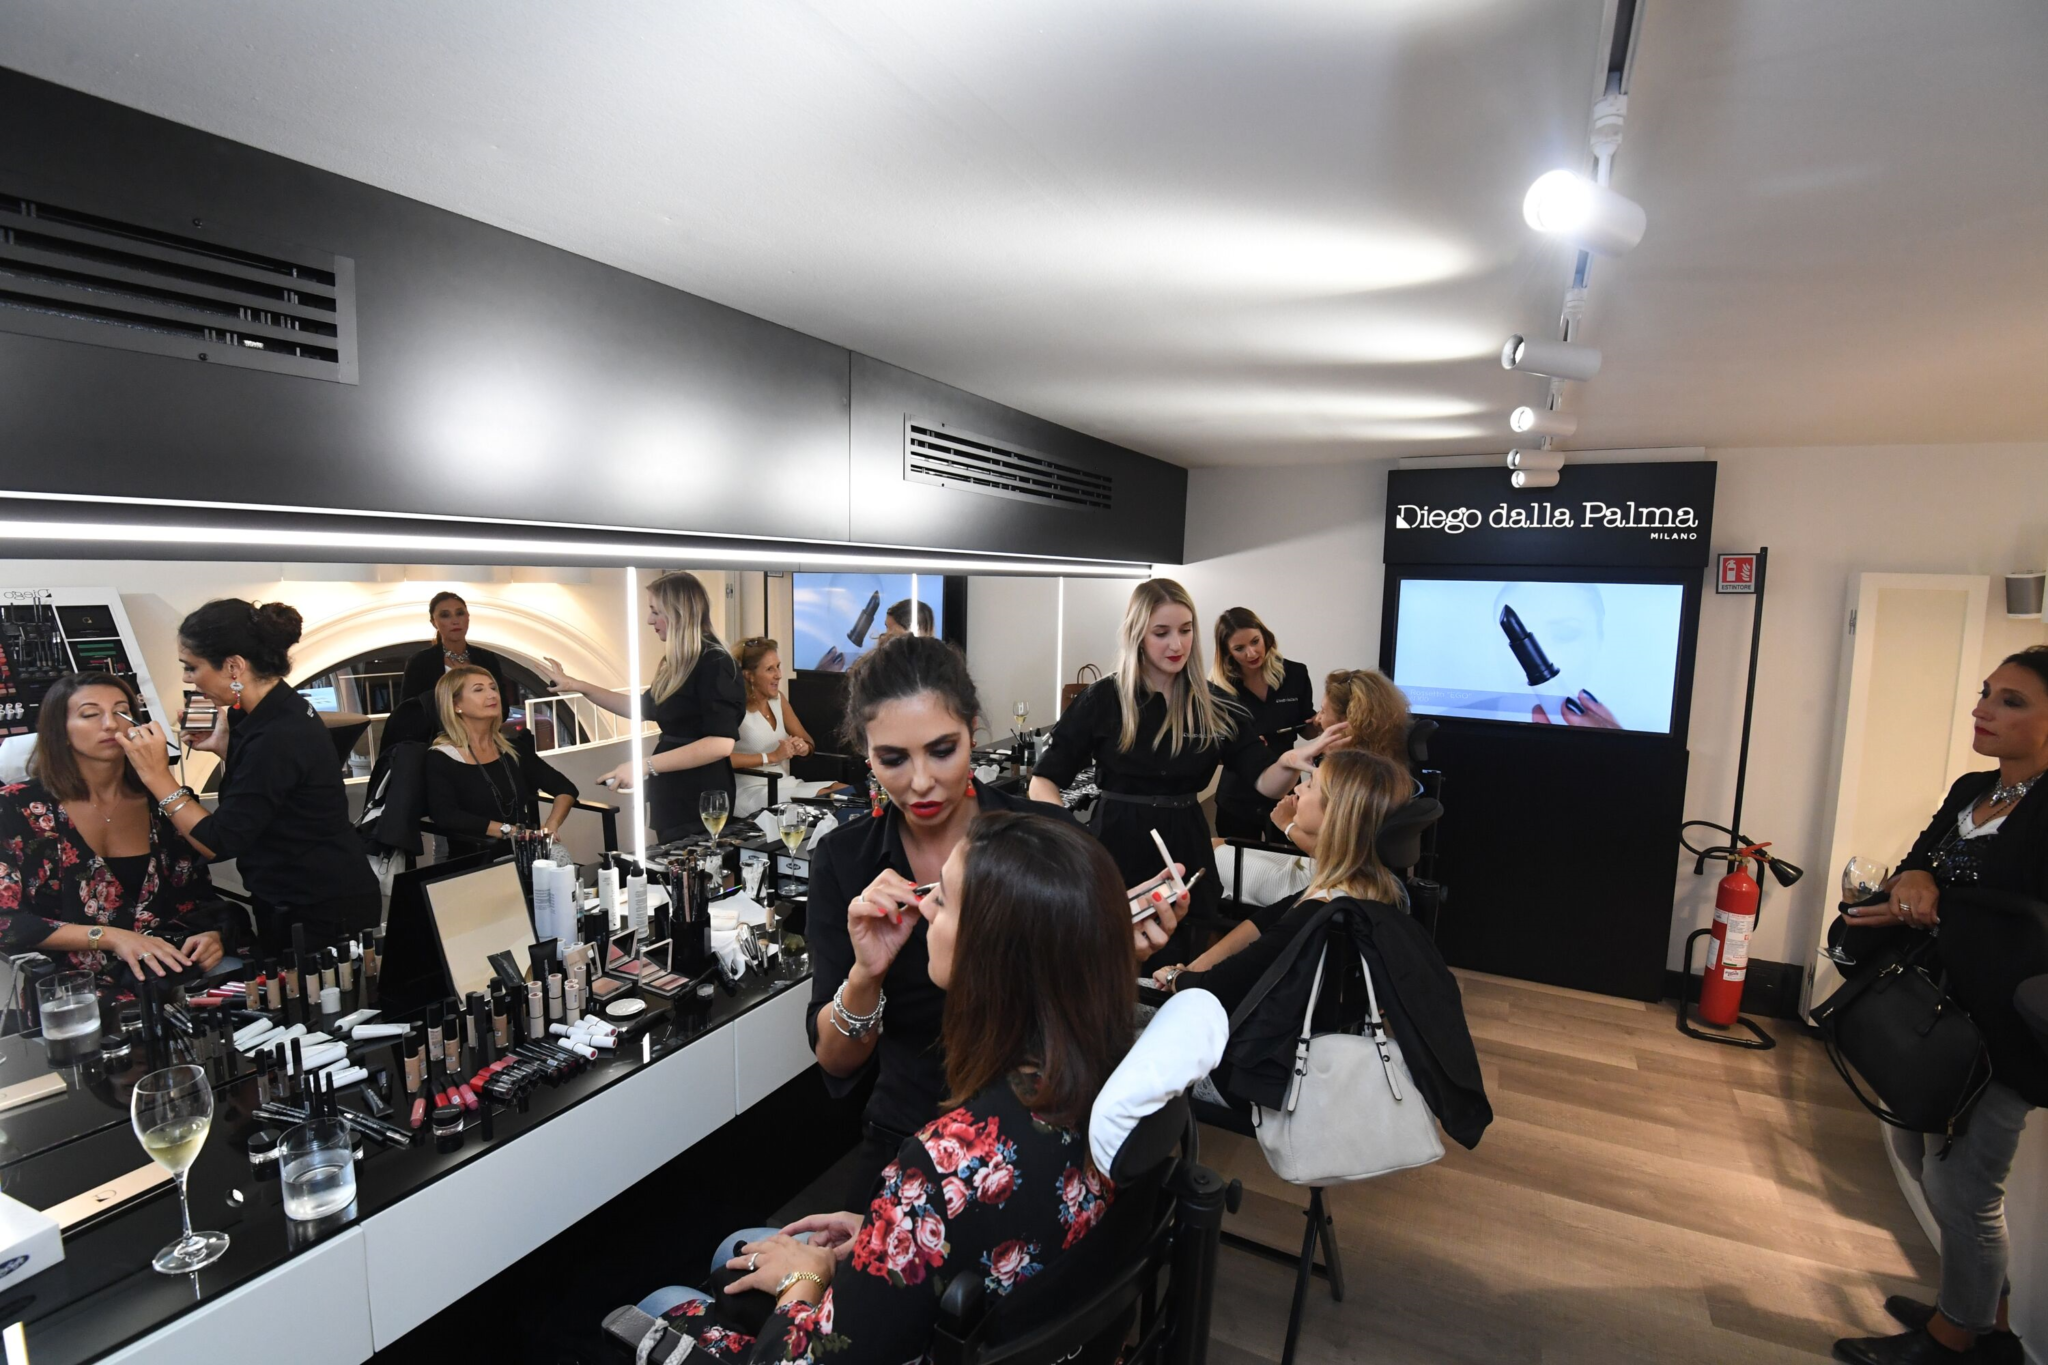 Diego dalla Palma Milano inaugura il nuovo Makeupstudio nel cuore di Bologna